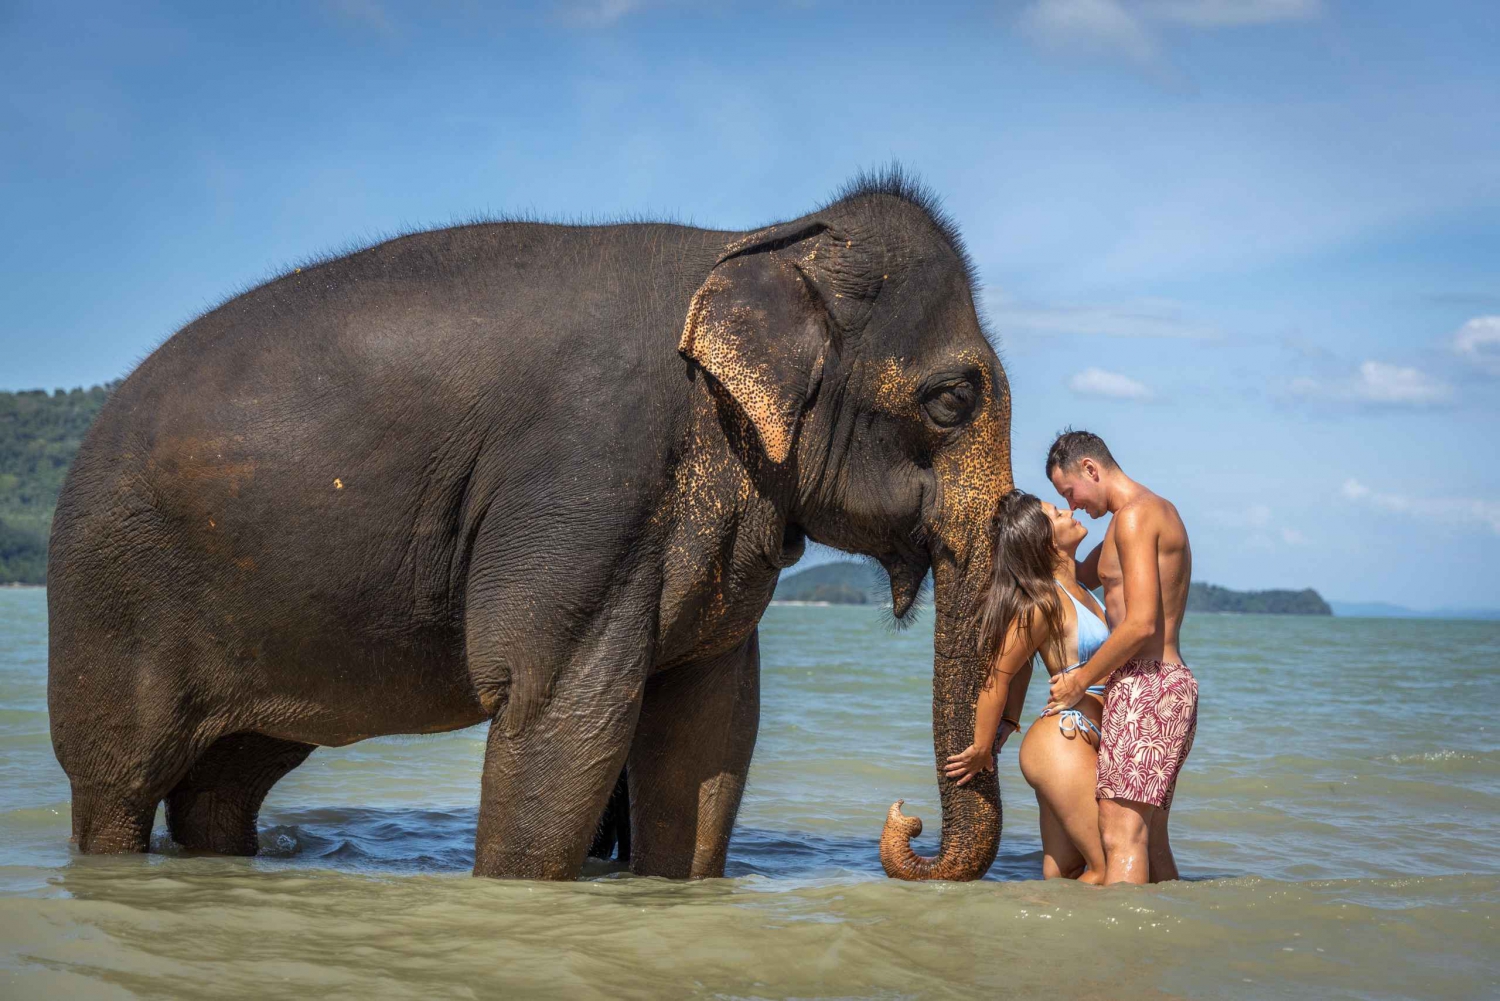 Alimente e brinque com o elefante em uma praia particular (1h30)